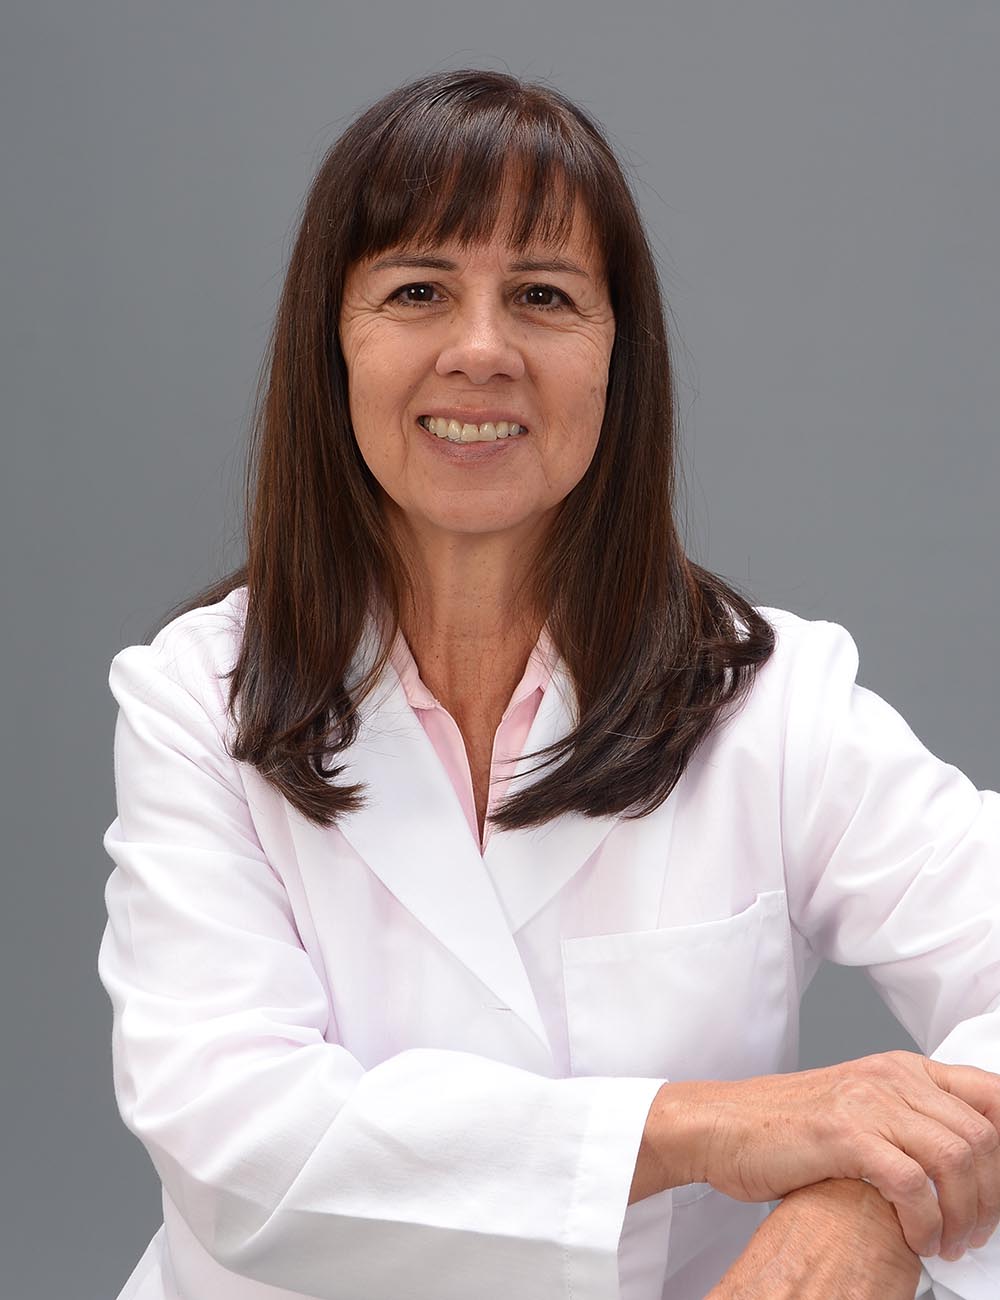 ليندا روميرو ، دكتوراه في الطب